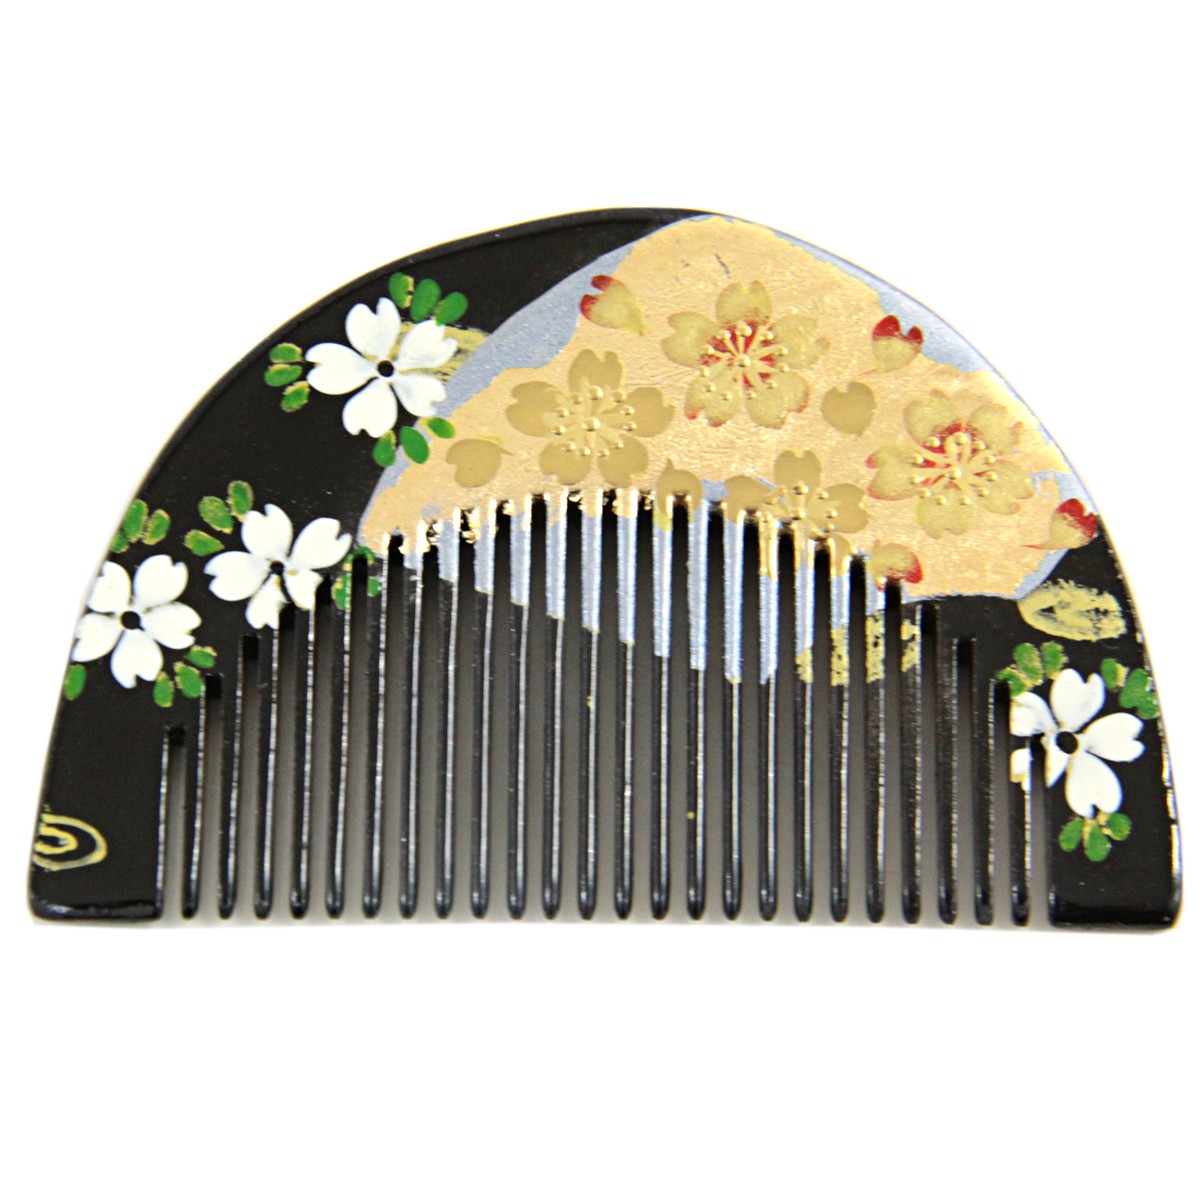 櫛かんざし -91- 前櫛 小丸 髪飾り 蒔絵 黒/赤 桜と扇